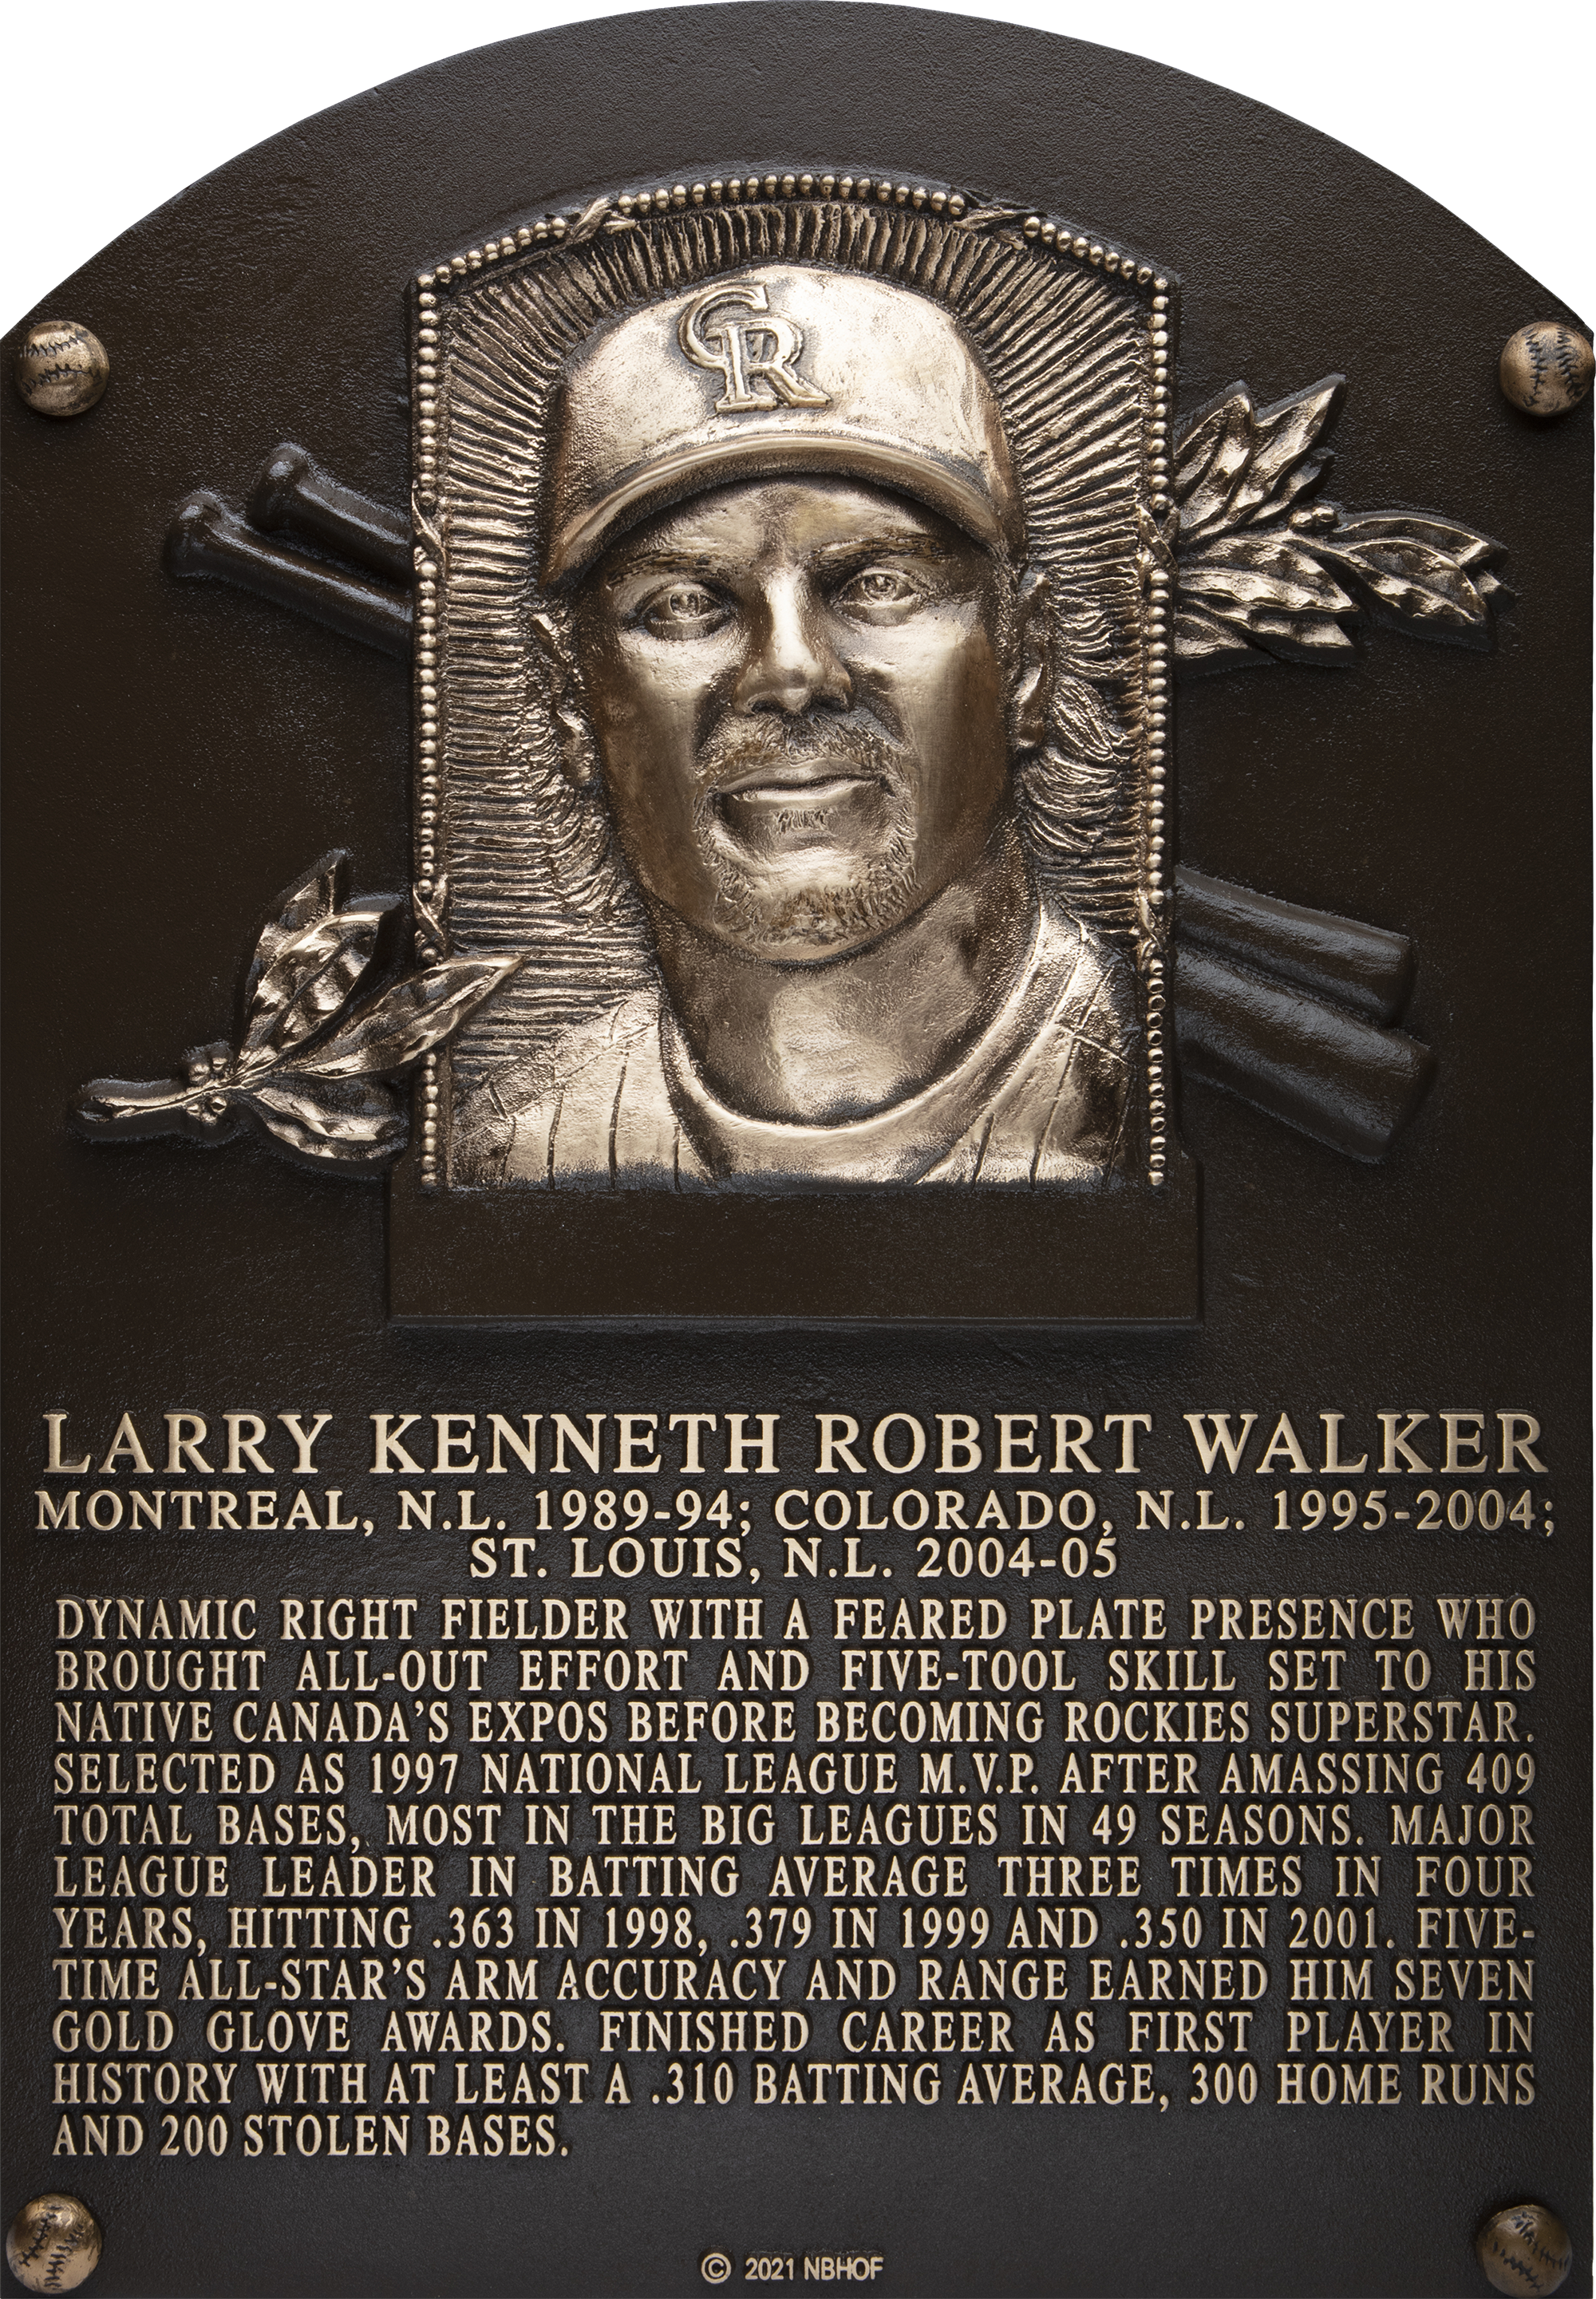 Larry Walker Hall of Fame plaque